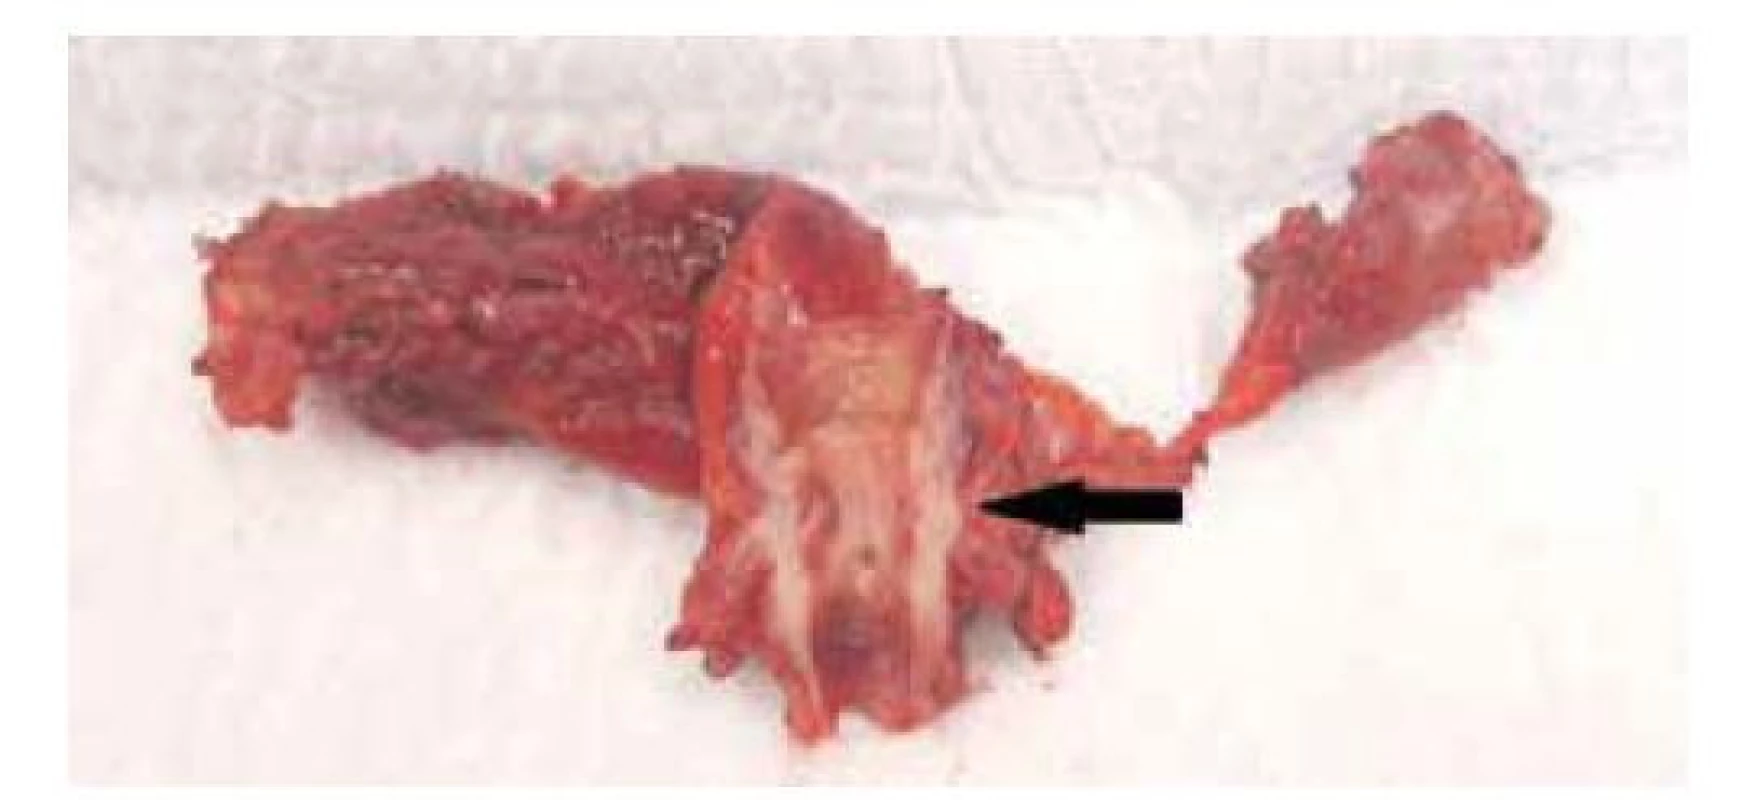 Segmentální resekce žlučových cest, resekát s cholangiokarcinomem
středního žlučovodu (černá šipka)<br>
Fig. 2: Bile duct segmental resection, specimen with middle
bile duct cholangiocarcinoma (black arrow)